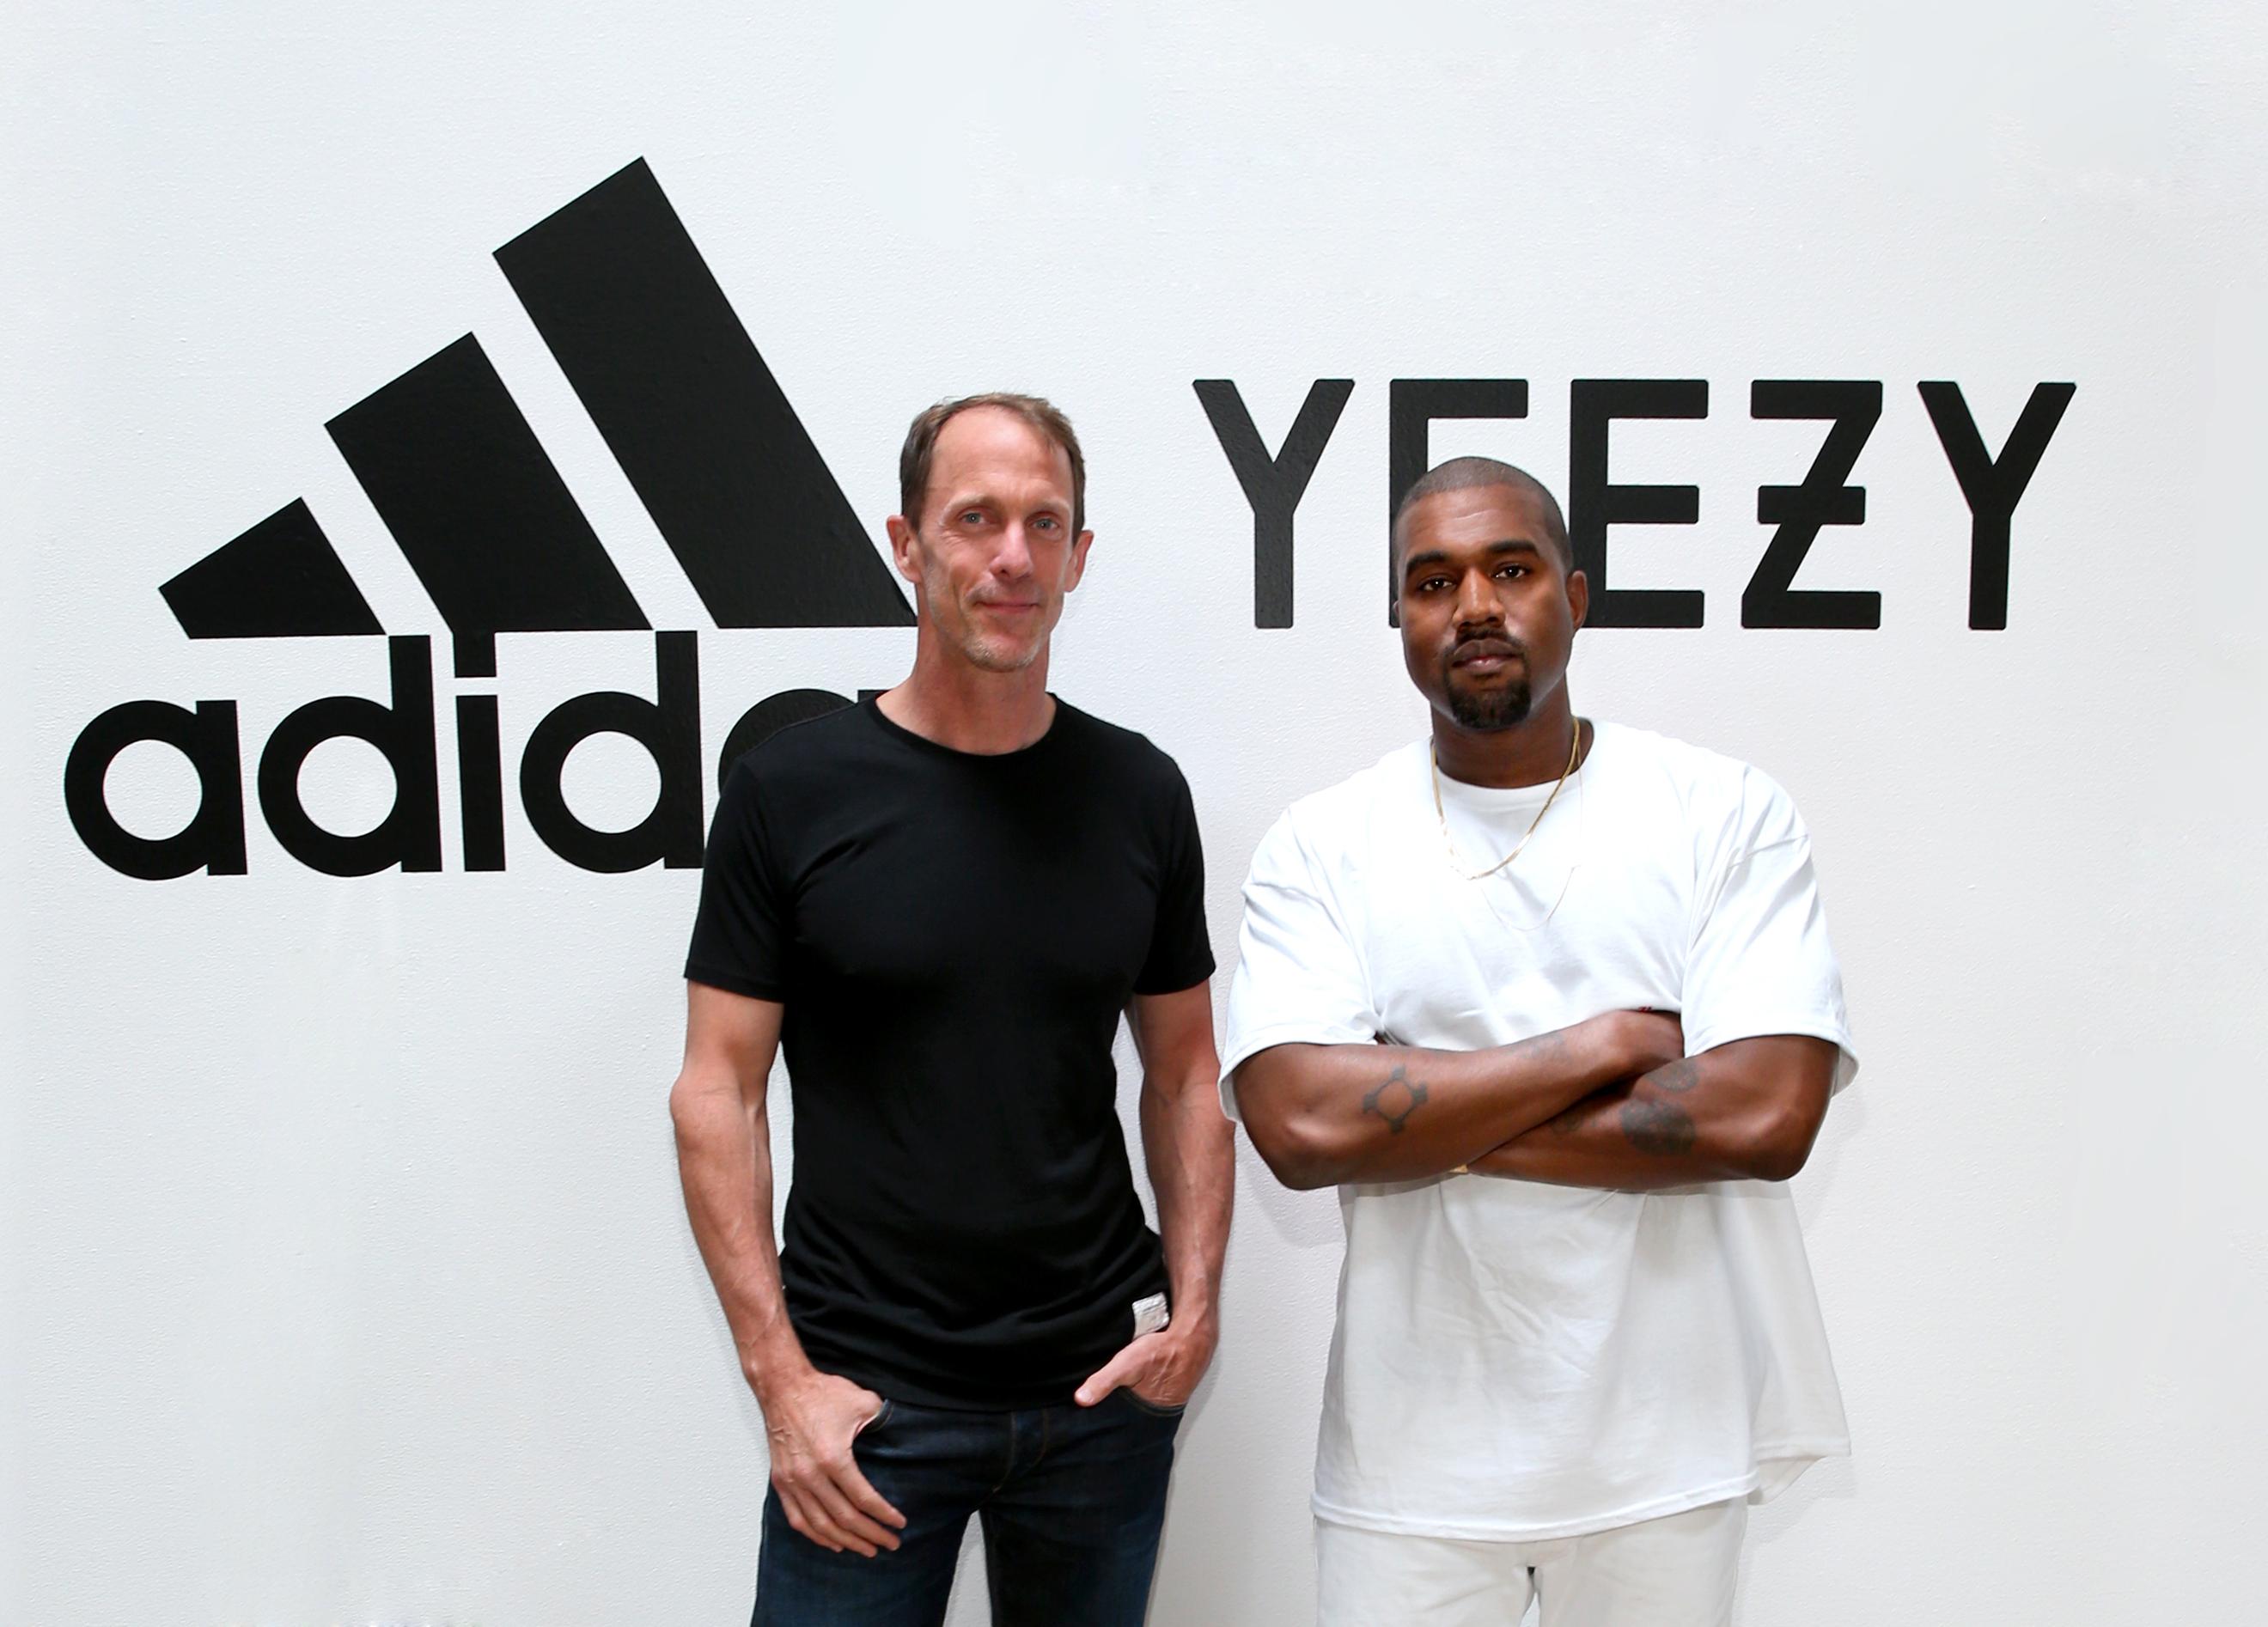 AVSLUTTER SAMARBEIDET: Kanye West (t.h.) har i en årrekke samarbeidet med Adidas. Nå kutter sportsmerket samarbeidet med umiddelbar virkning. 